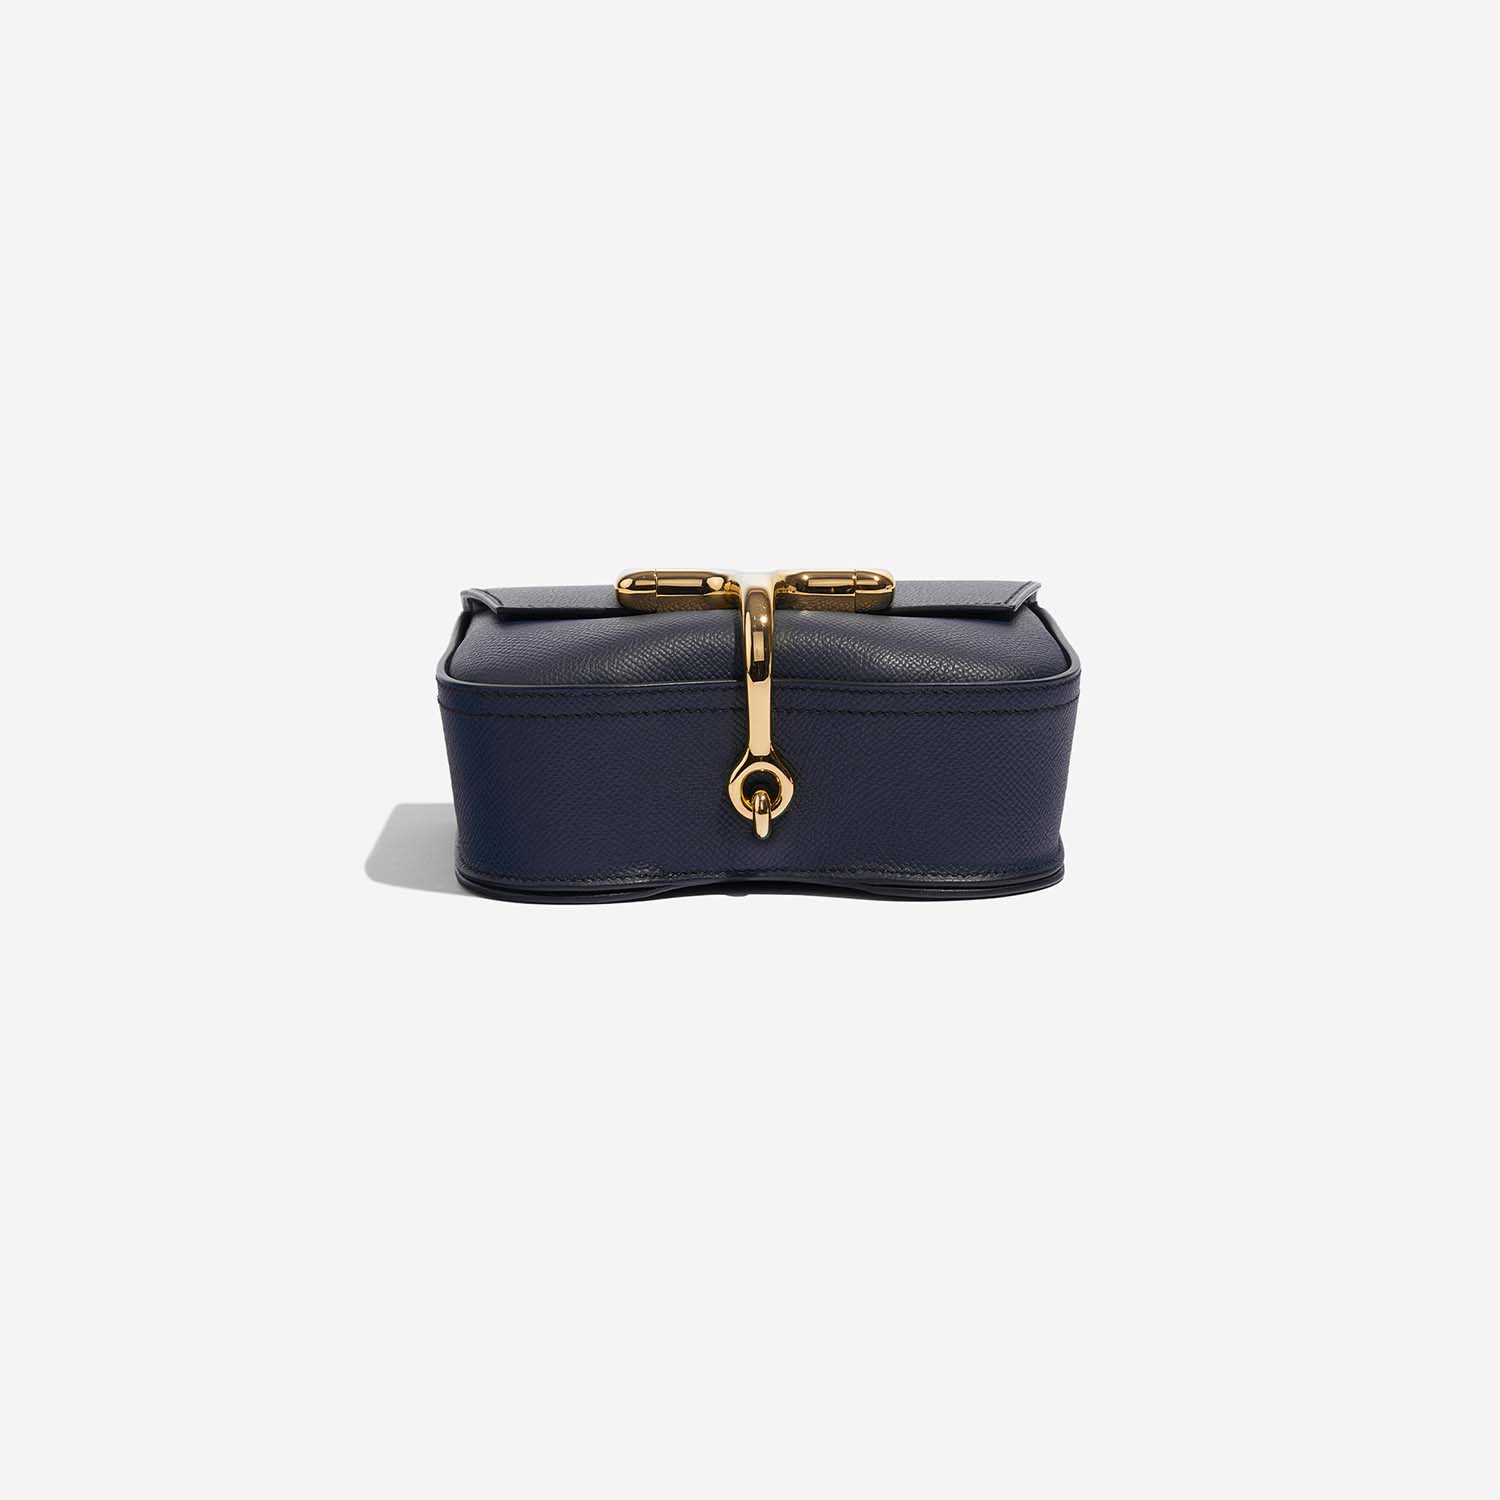 Hermès DellaCavalleria Mini BleuIndigo Bottom | Verkaufen Sie Ihre Designer-Tasche auf Saclab.com